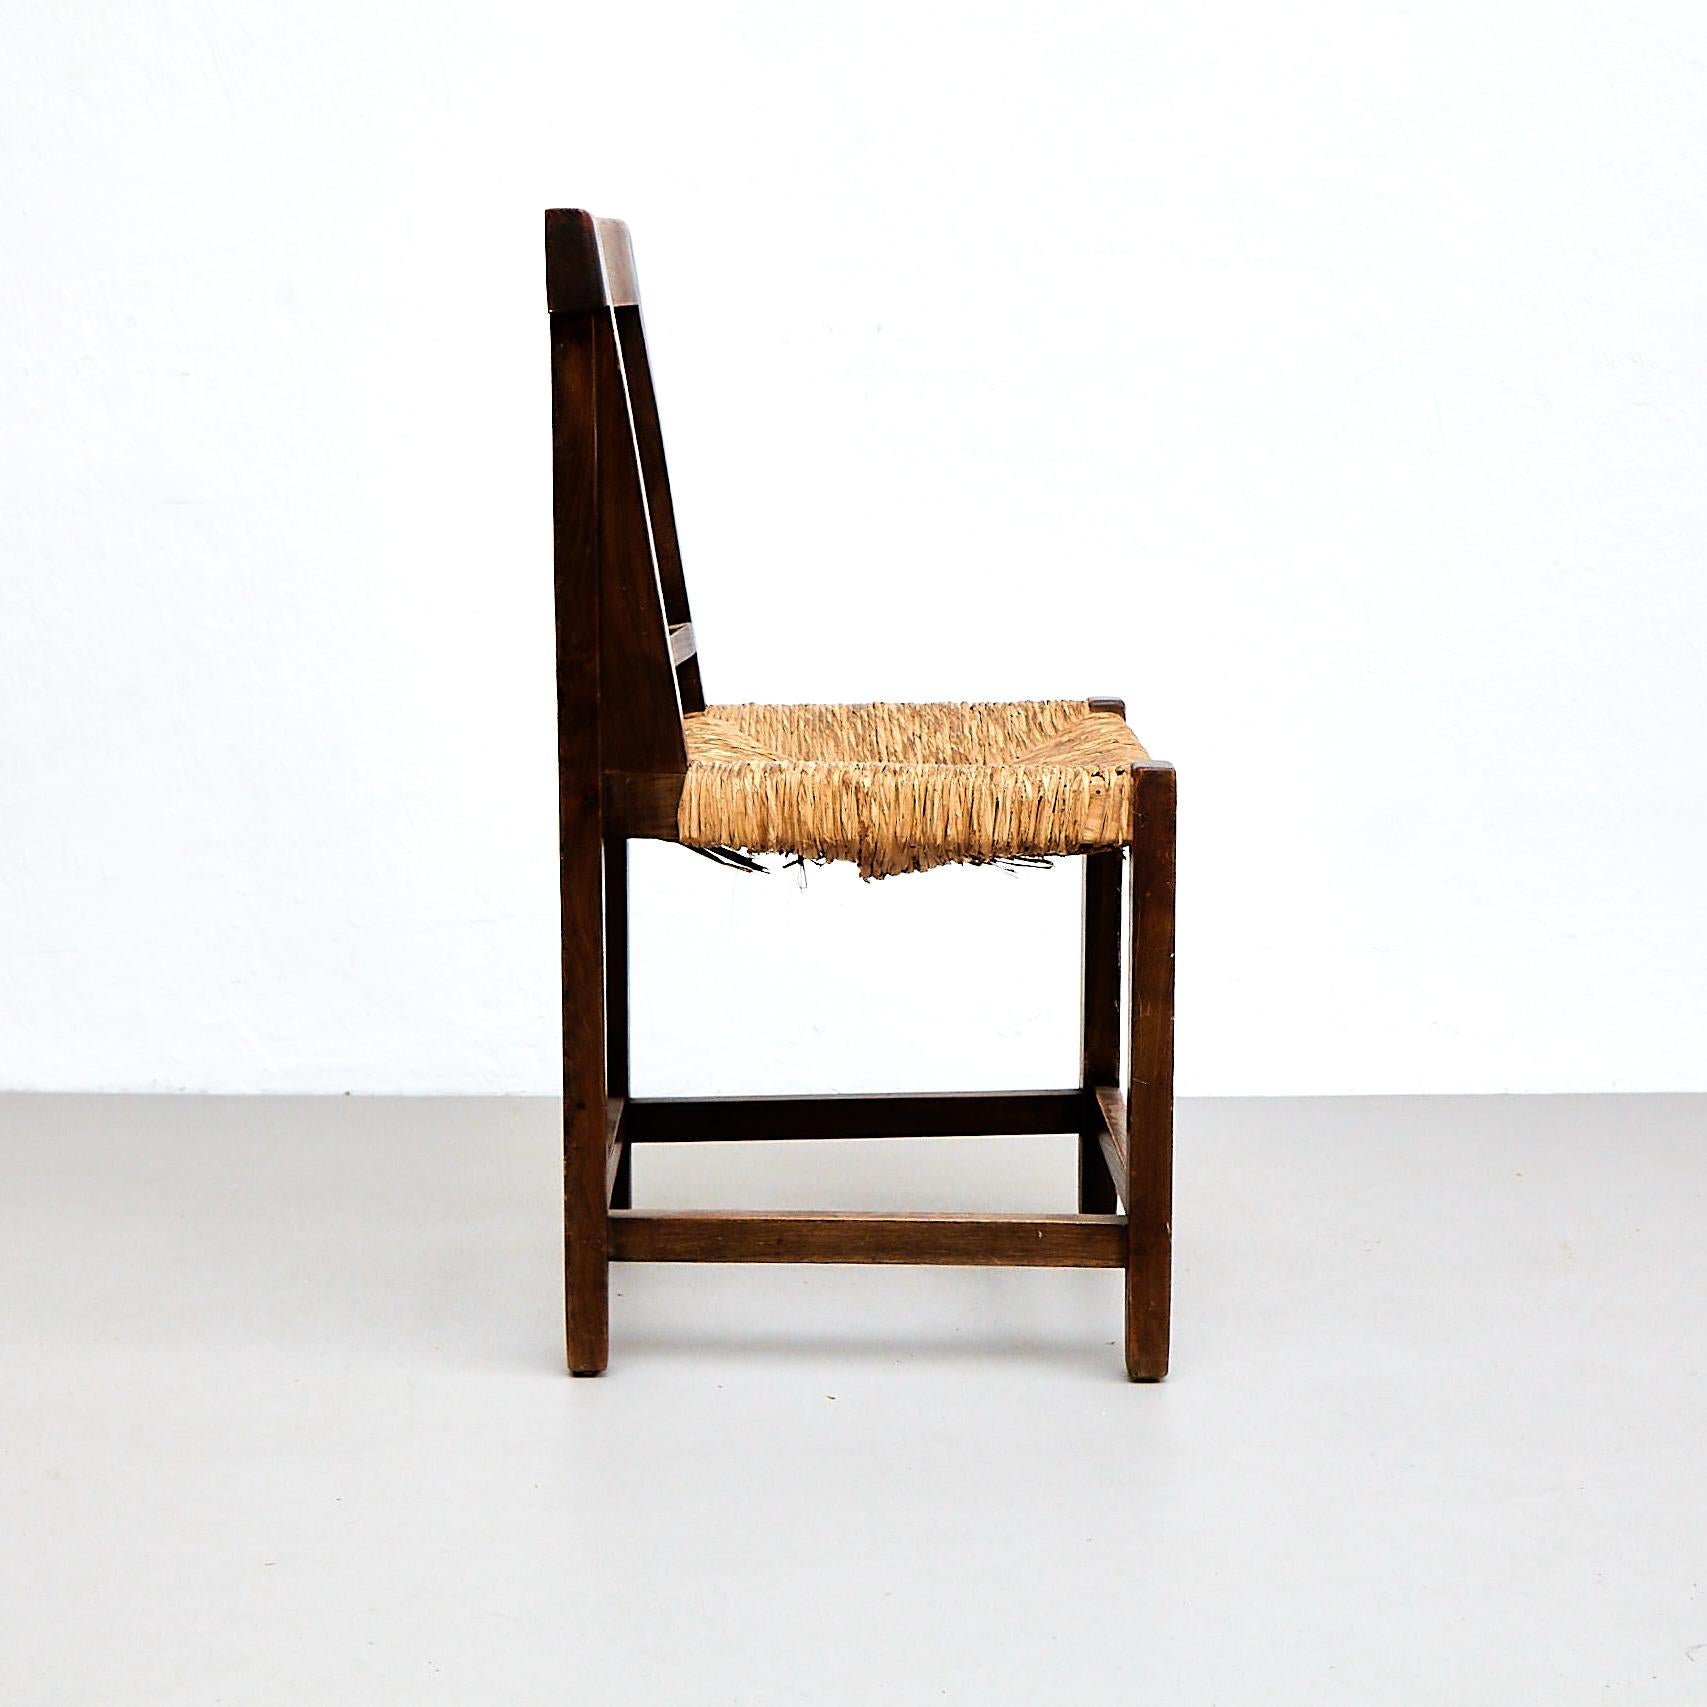 Satz von vier rustikalen französischen Stühlen aus Holz, um 1950 (Rustikal)